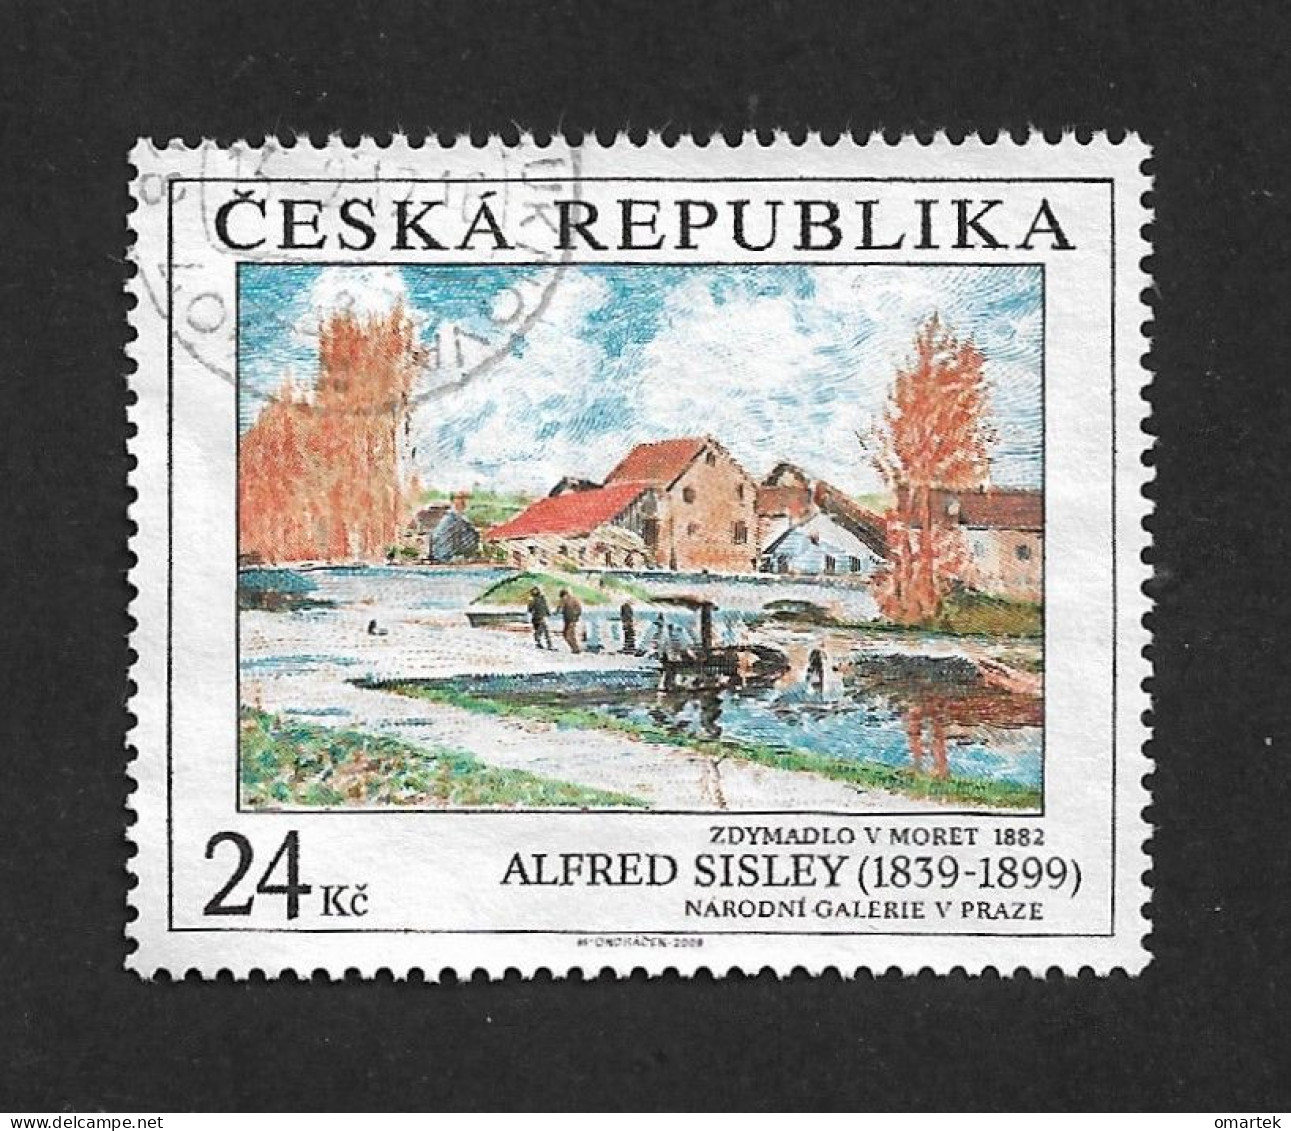 Czech Republic 2009 ⊙ Mi 614 Sc 3435 Alfred Sisley. Art Painting. Tschechische Republik. C3 - Gebruikt